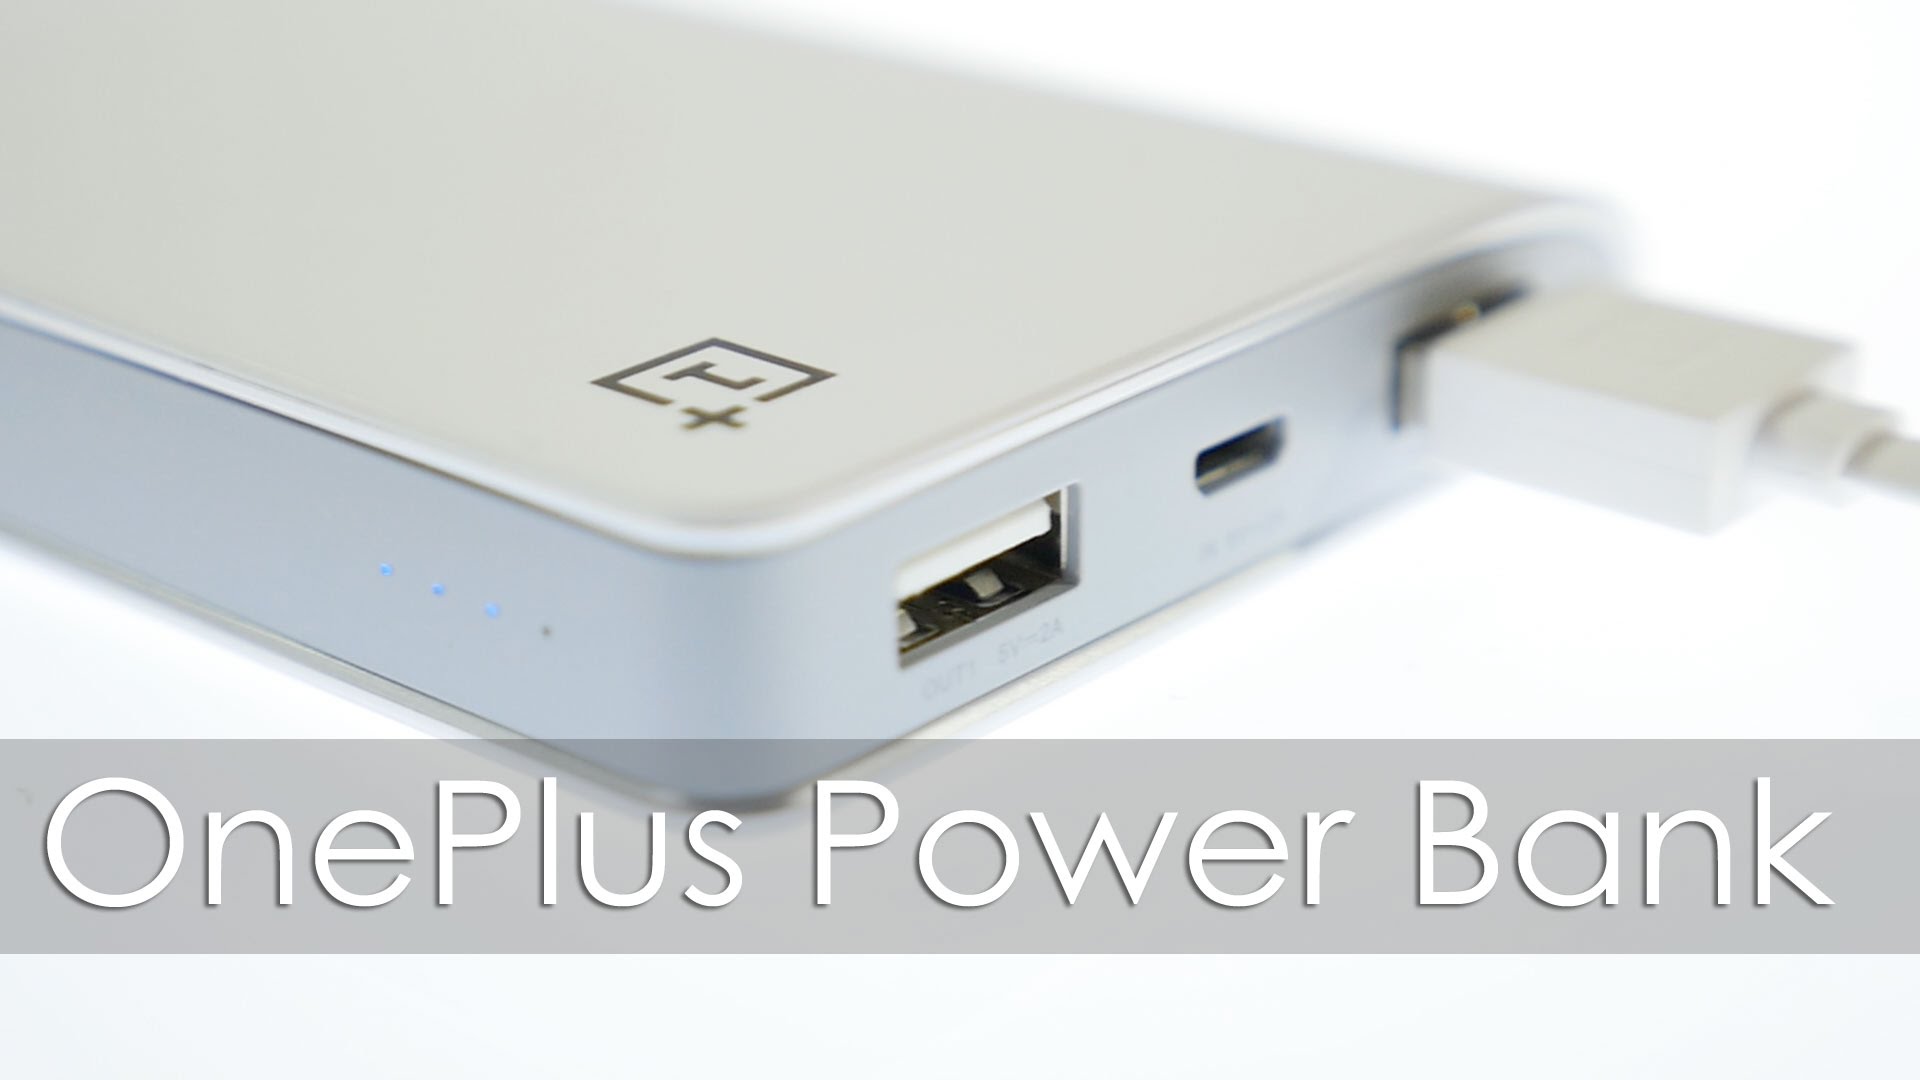 OnePlus-PowerBank-Price-Revised